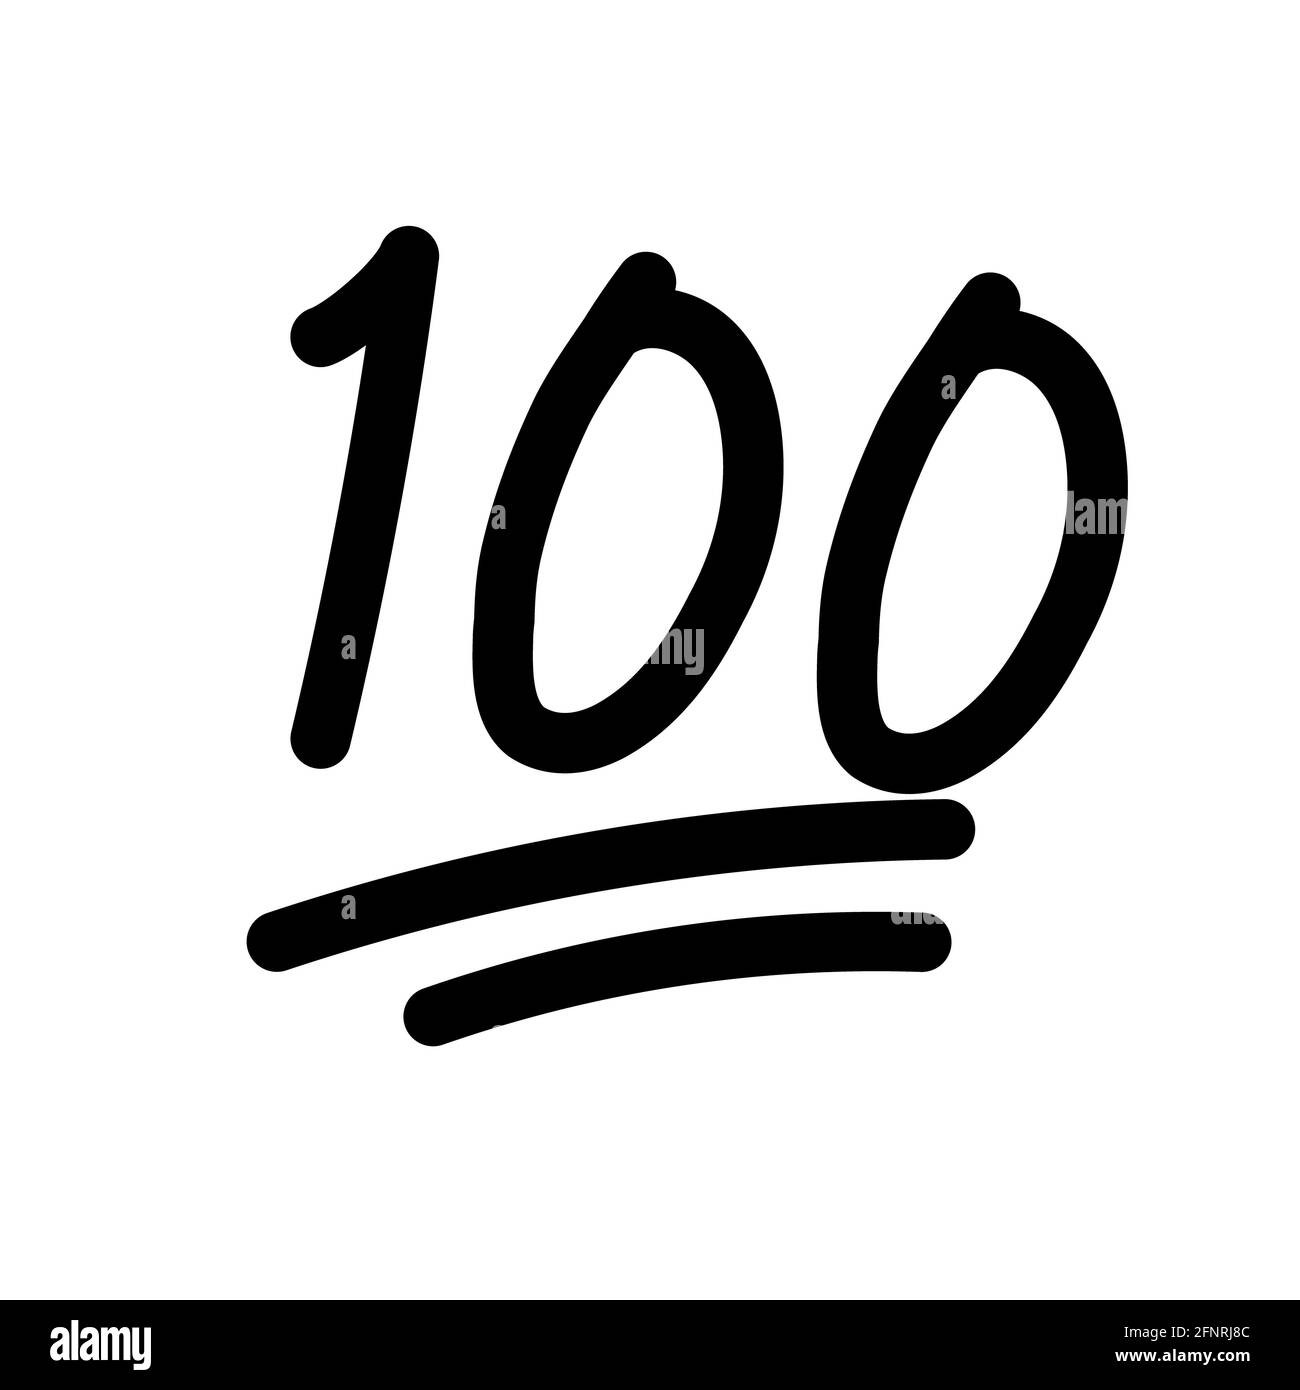 100 hundred emoticon icon on white background. 100 emoji score sticker. 100 sign. flat style. Stock Photo